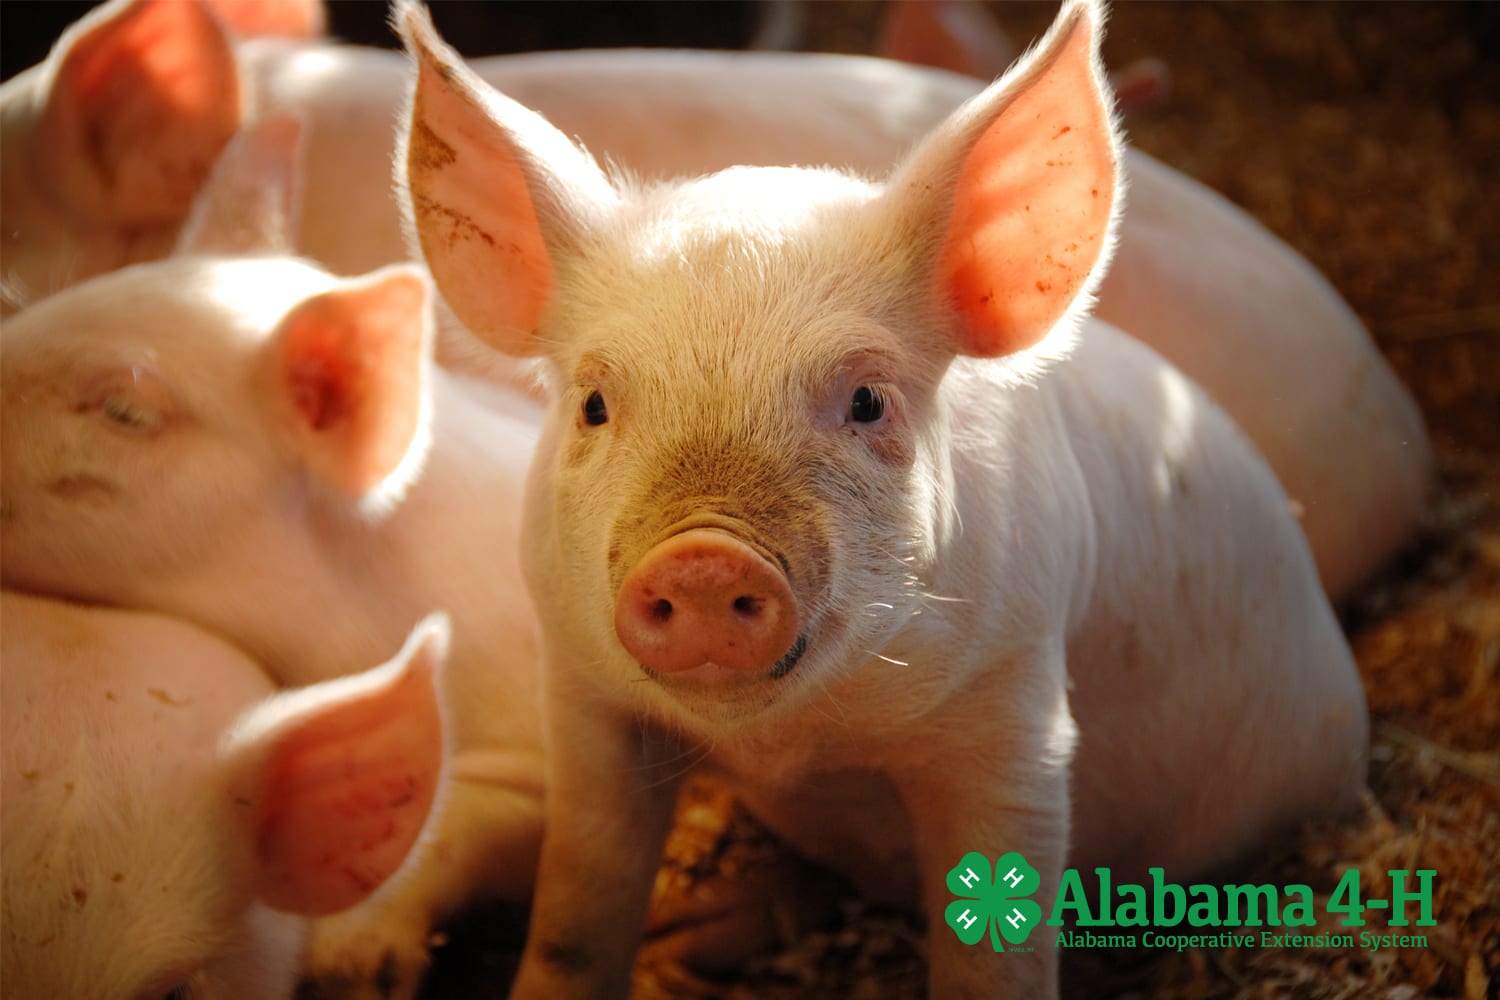 Alabama 4-H Livestock Skillathon; pigs